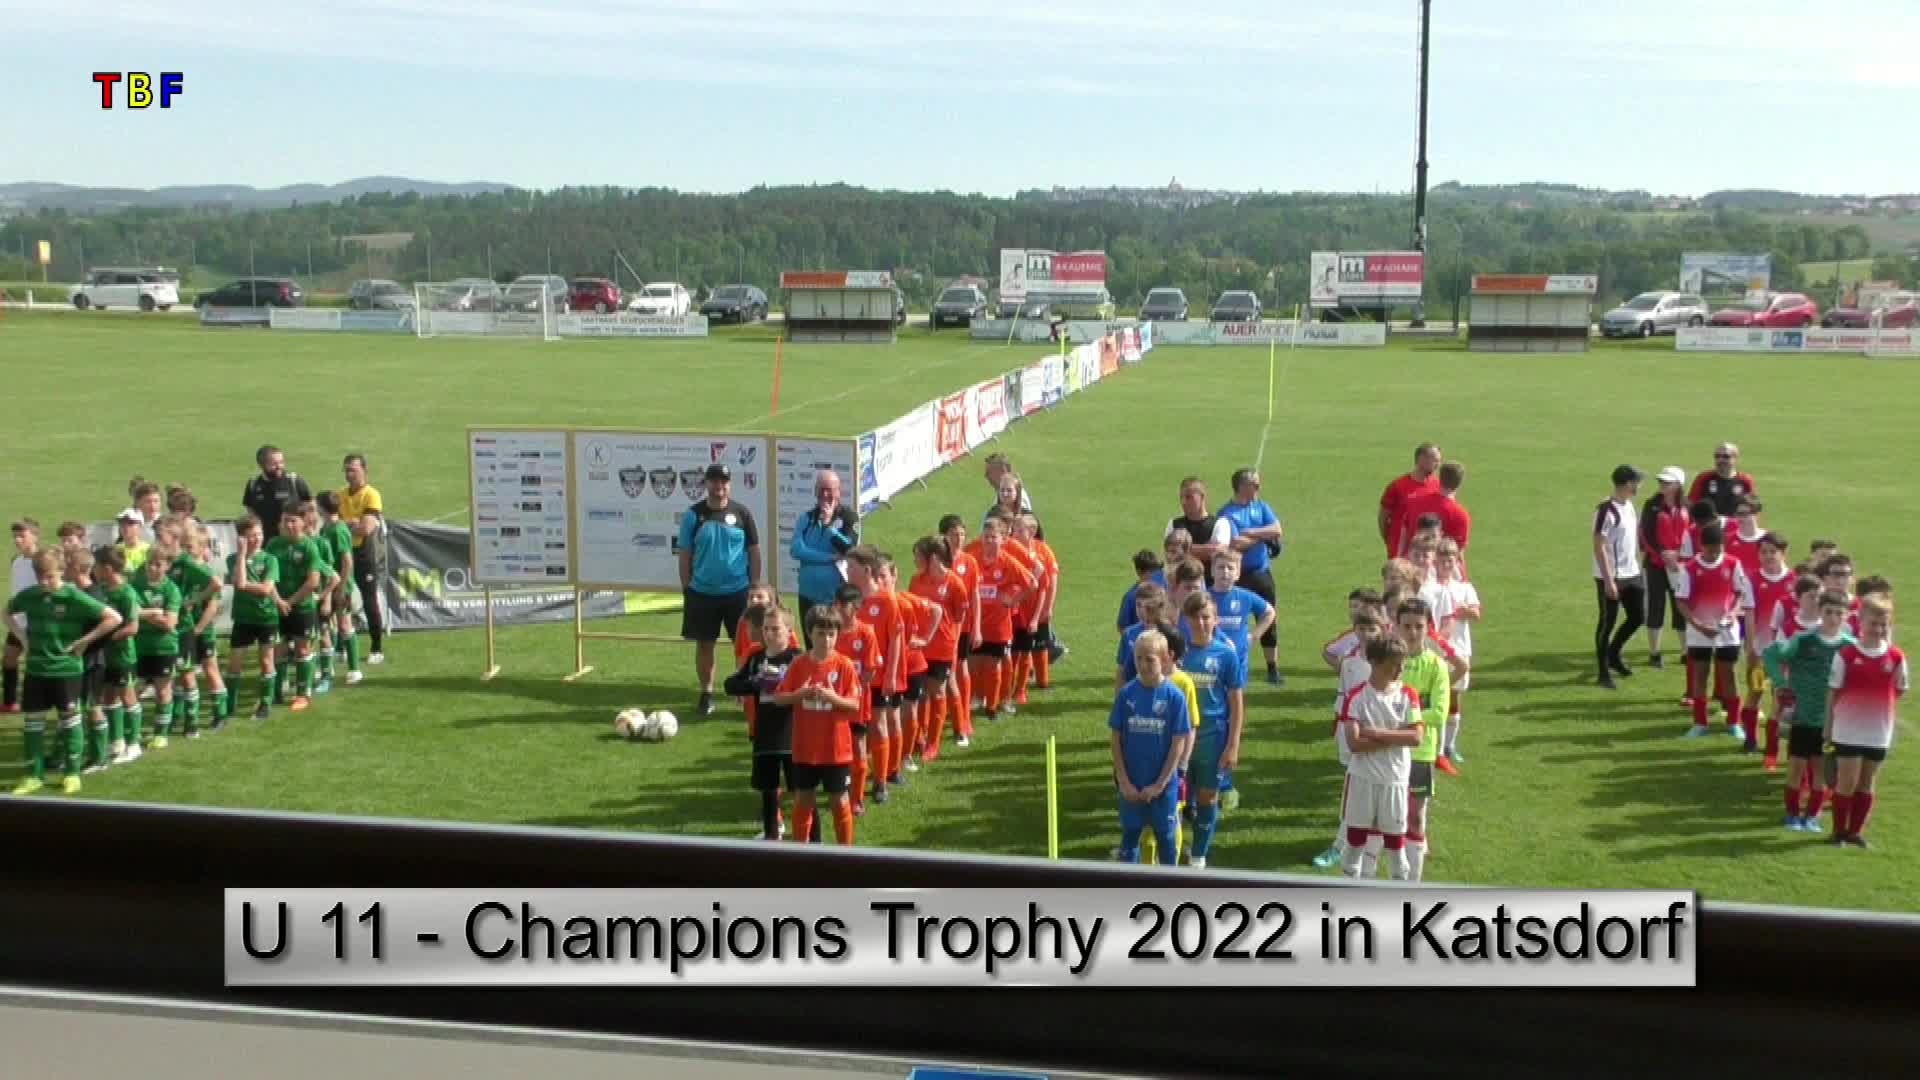 U 11- Champions Trophy 2022 in Katsdorf